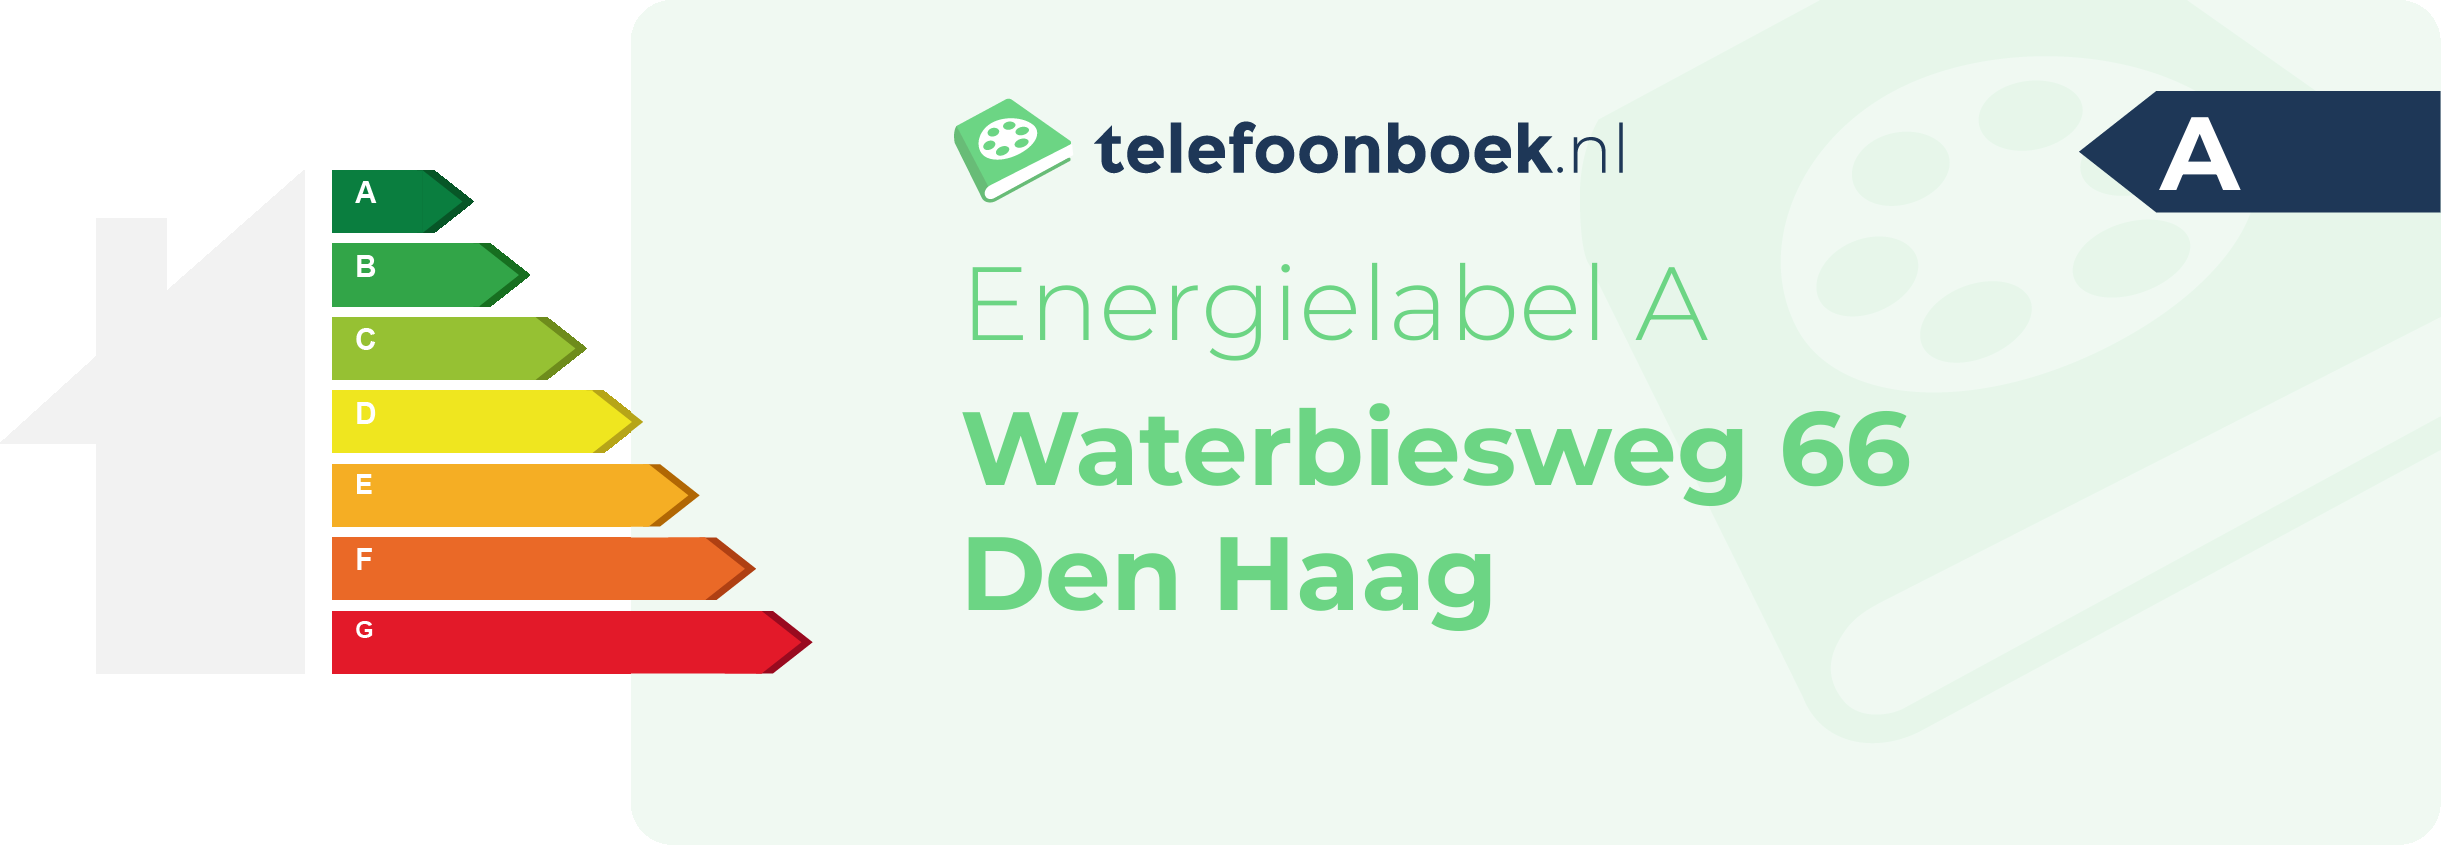 Energielabel Waterbiesweg 66 Den Haag